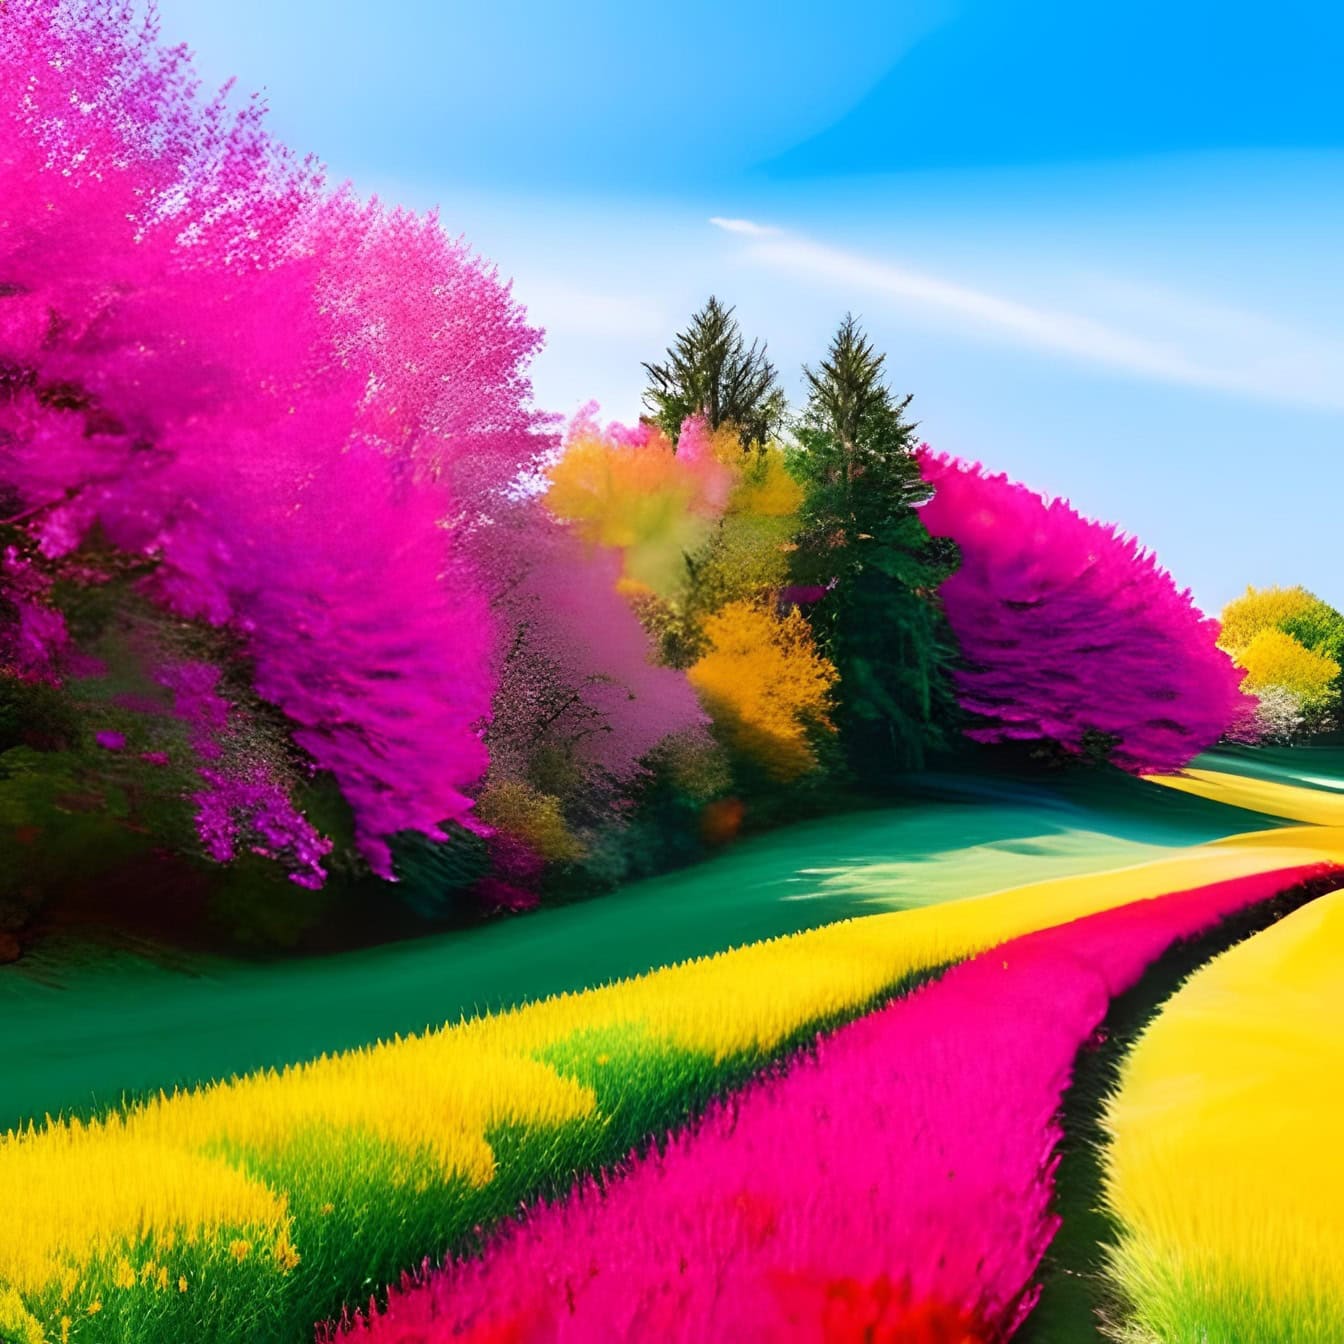 Ilustrasi grafis yang hidup dengan nada ungu-merah muda dari ladang dan pepohonan